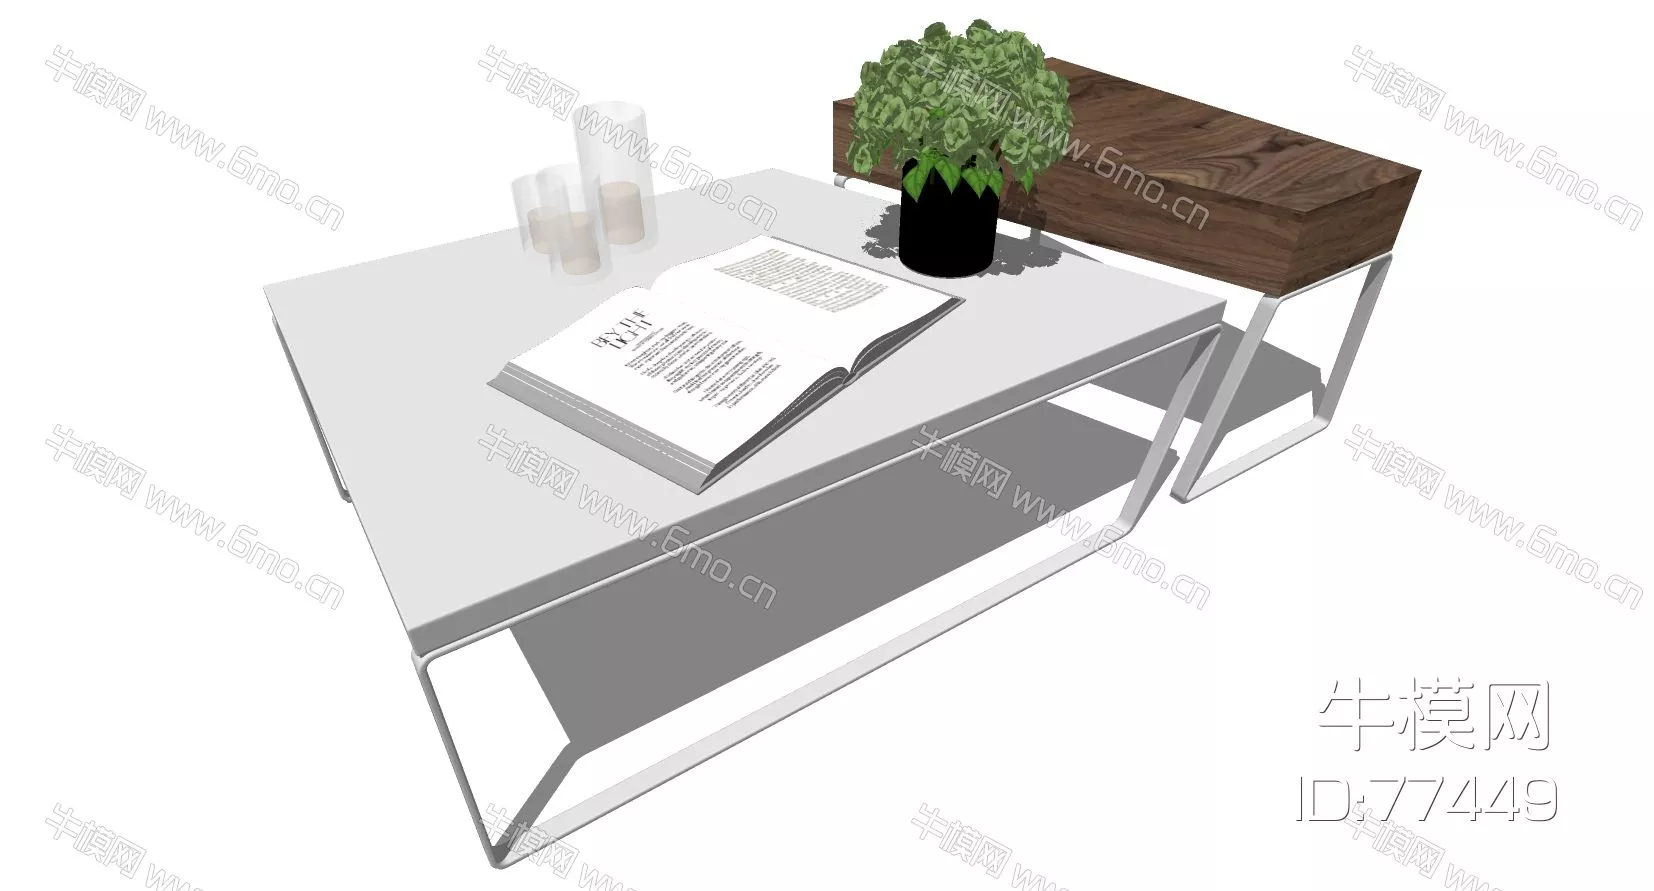 NORDIC SIDE TABLE - SKETCHUP 3D MODEL - ENSCAPE - 77449